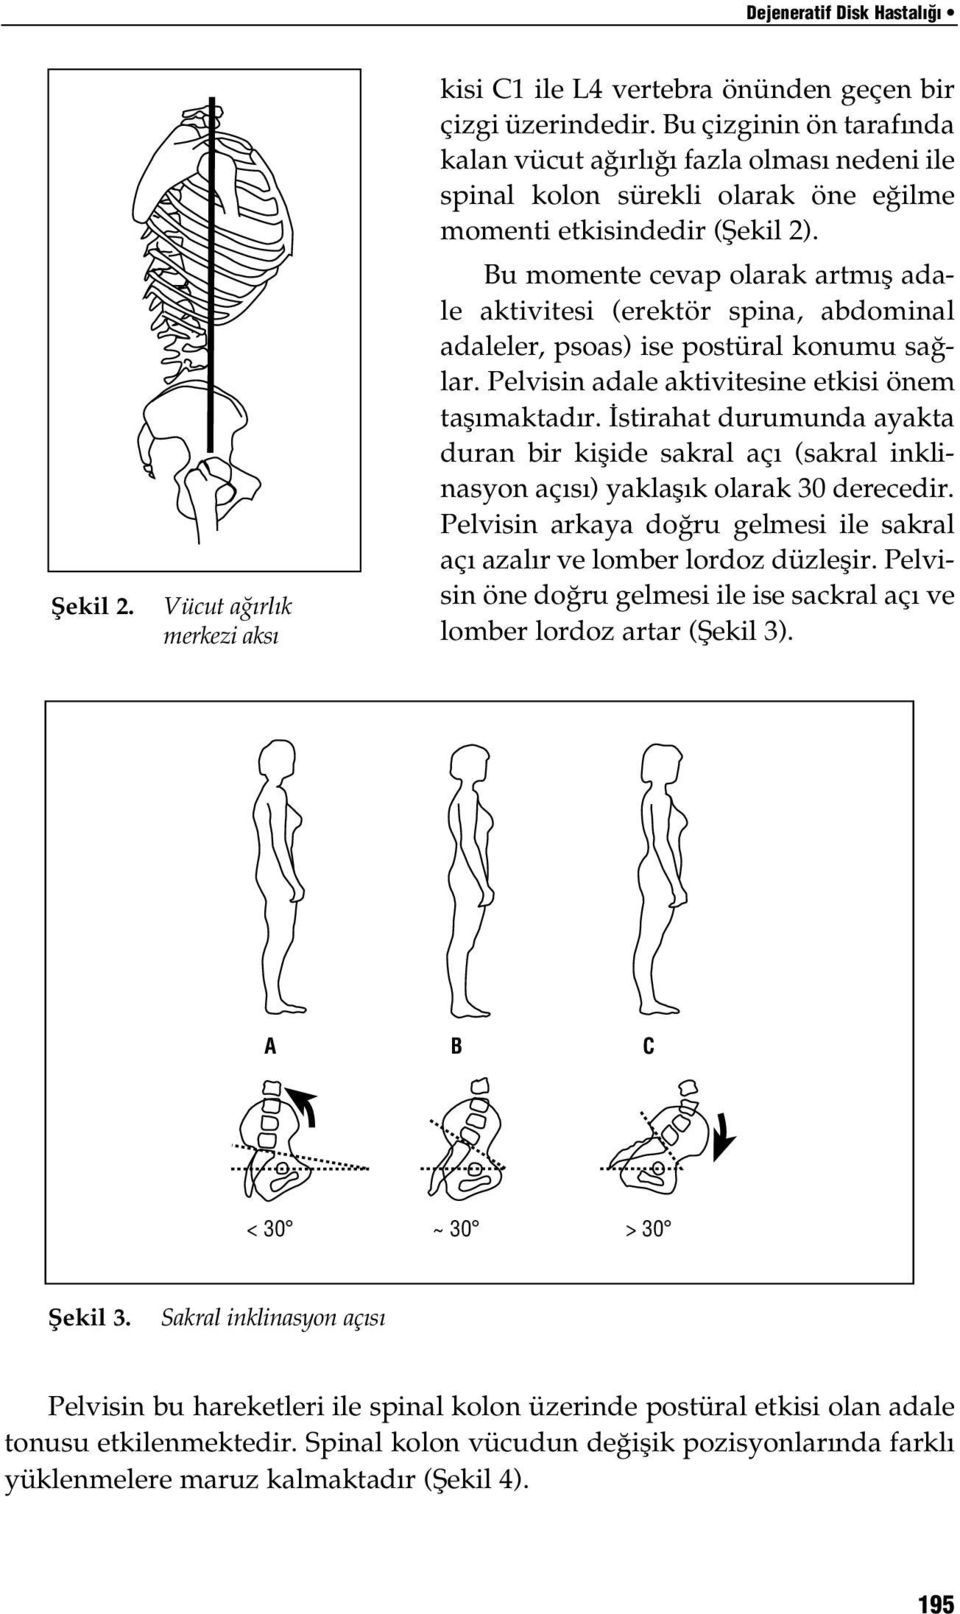 Bu momente cevap olarak artmış adale aktivitesi (erektör spina, abdominal adaleler, psoas) ise postüral konumu sağlar. Pelvisin adale aktivitesine etkisi önem taşımaktadır.